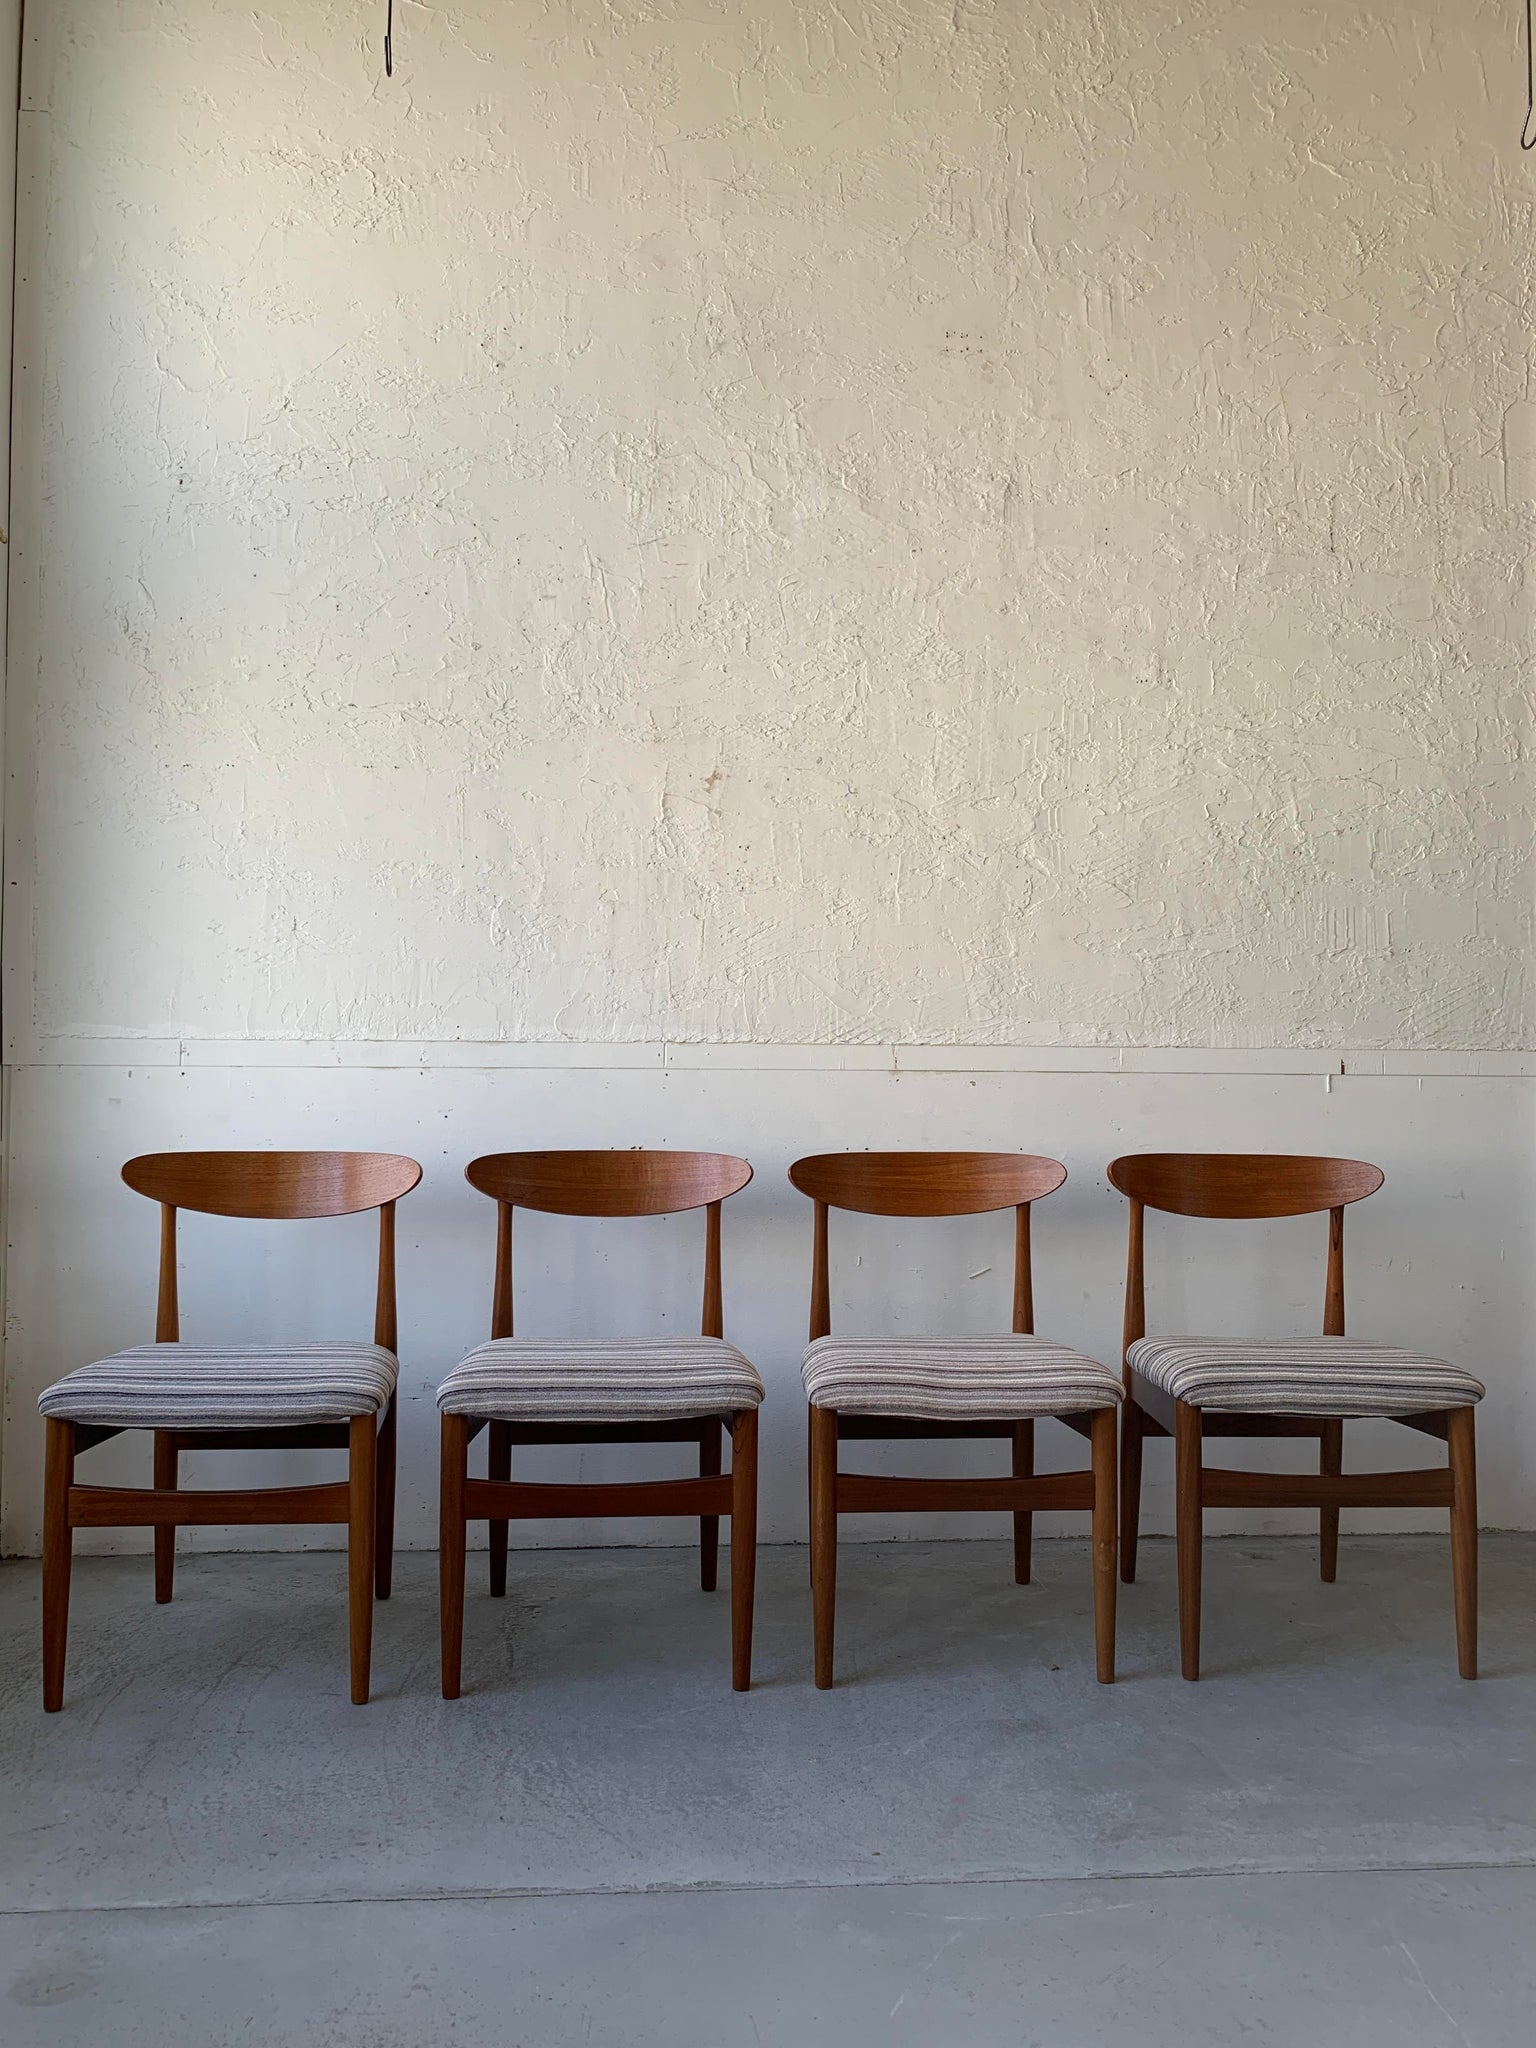 ジェンティーク ダイニング チェア 4脚セット / jentique dining chairs set of 4 #0192